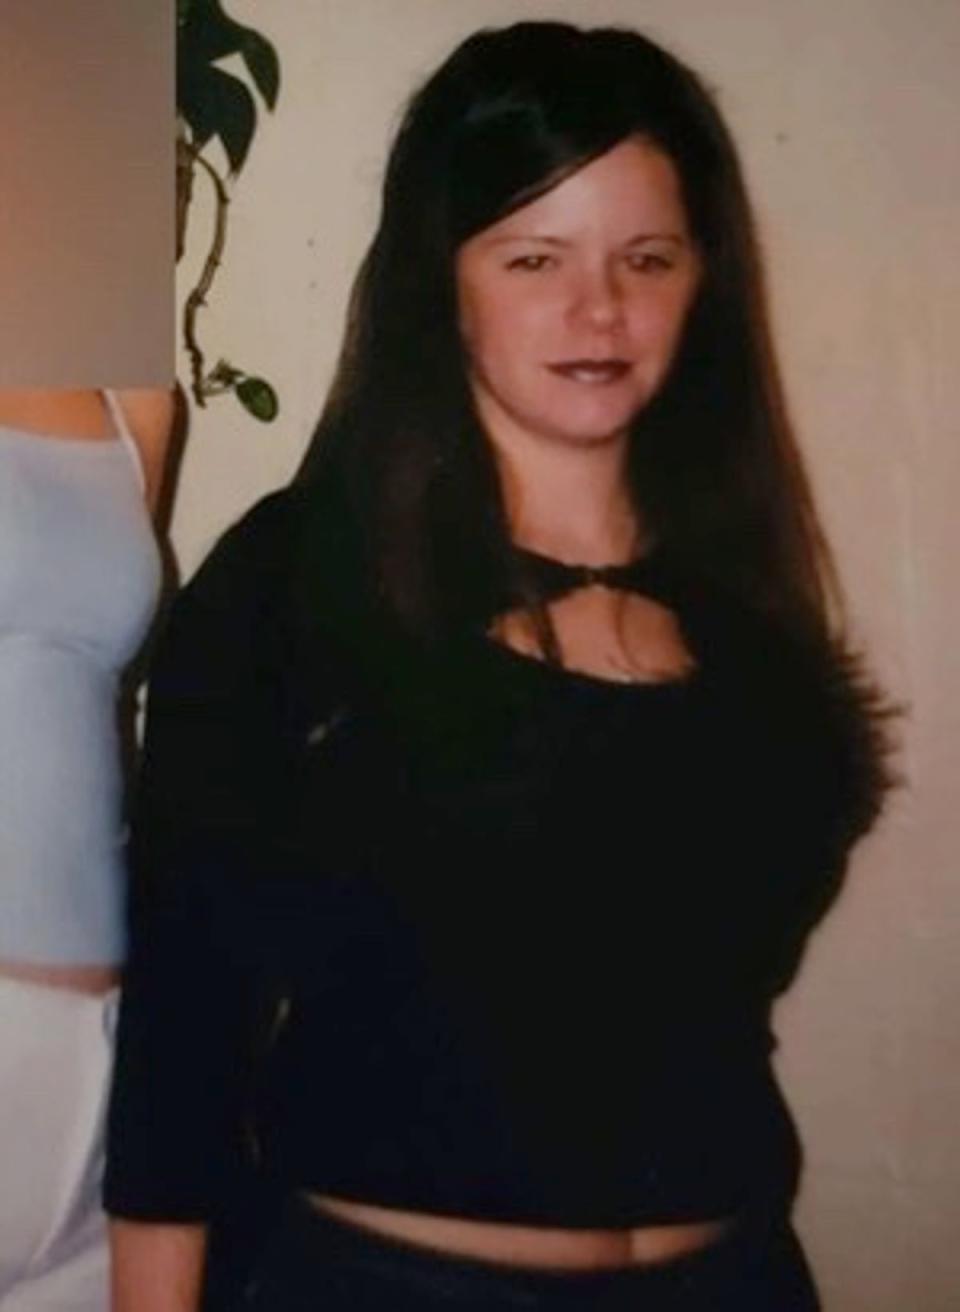 Valerie Mack was last seen alive in New Jersey (Facebook)